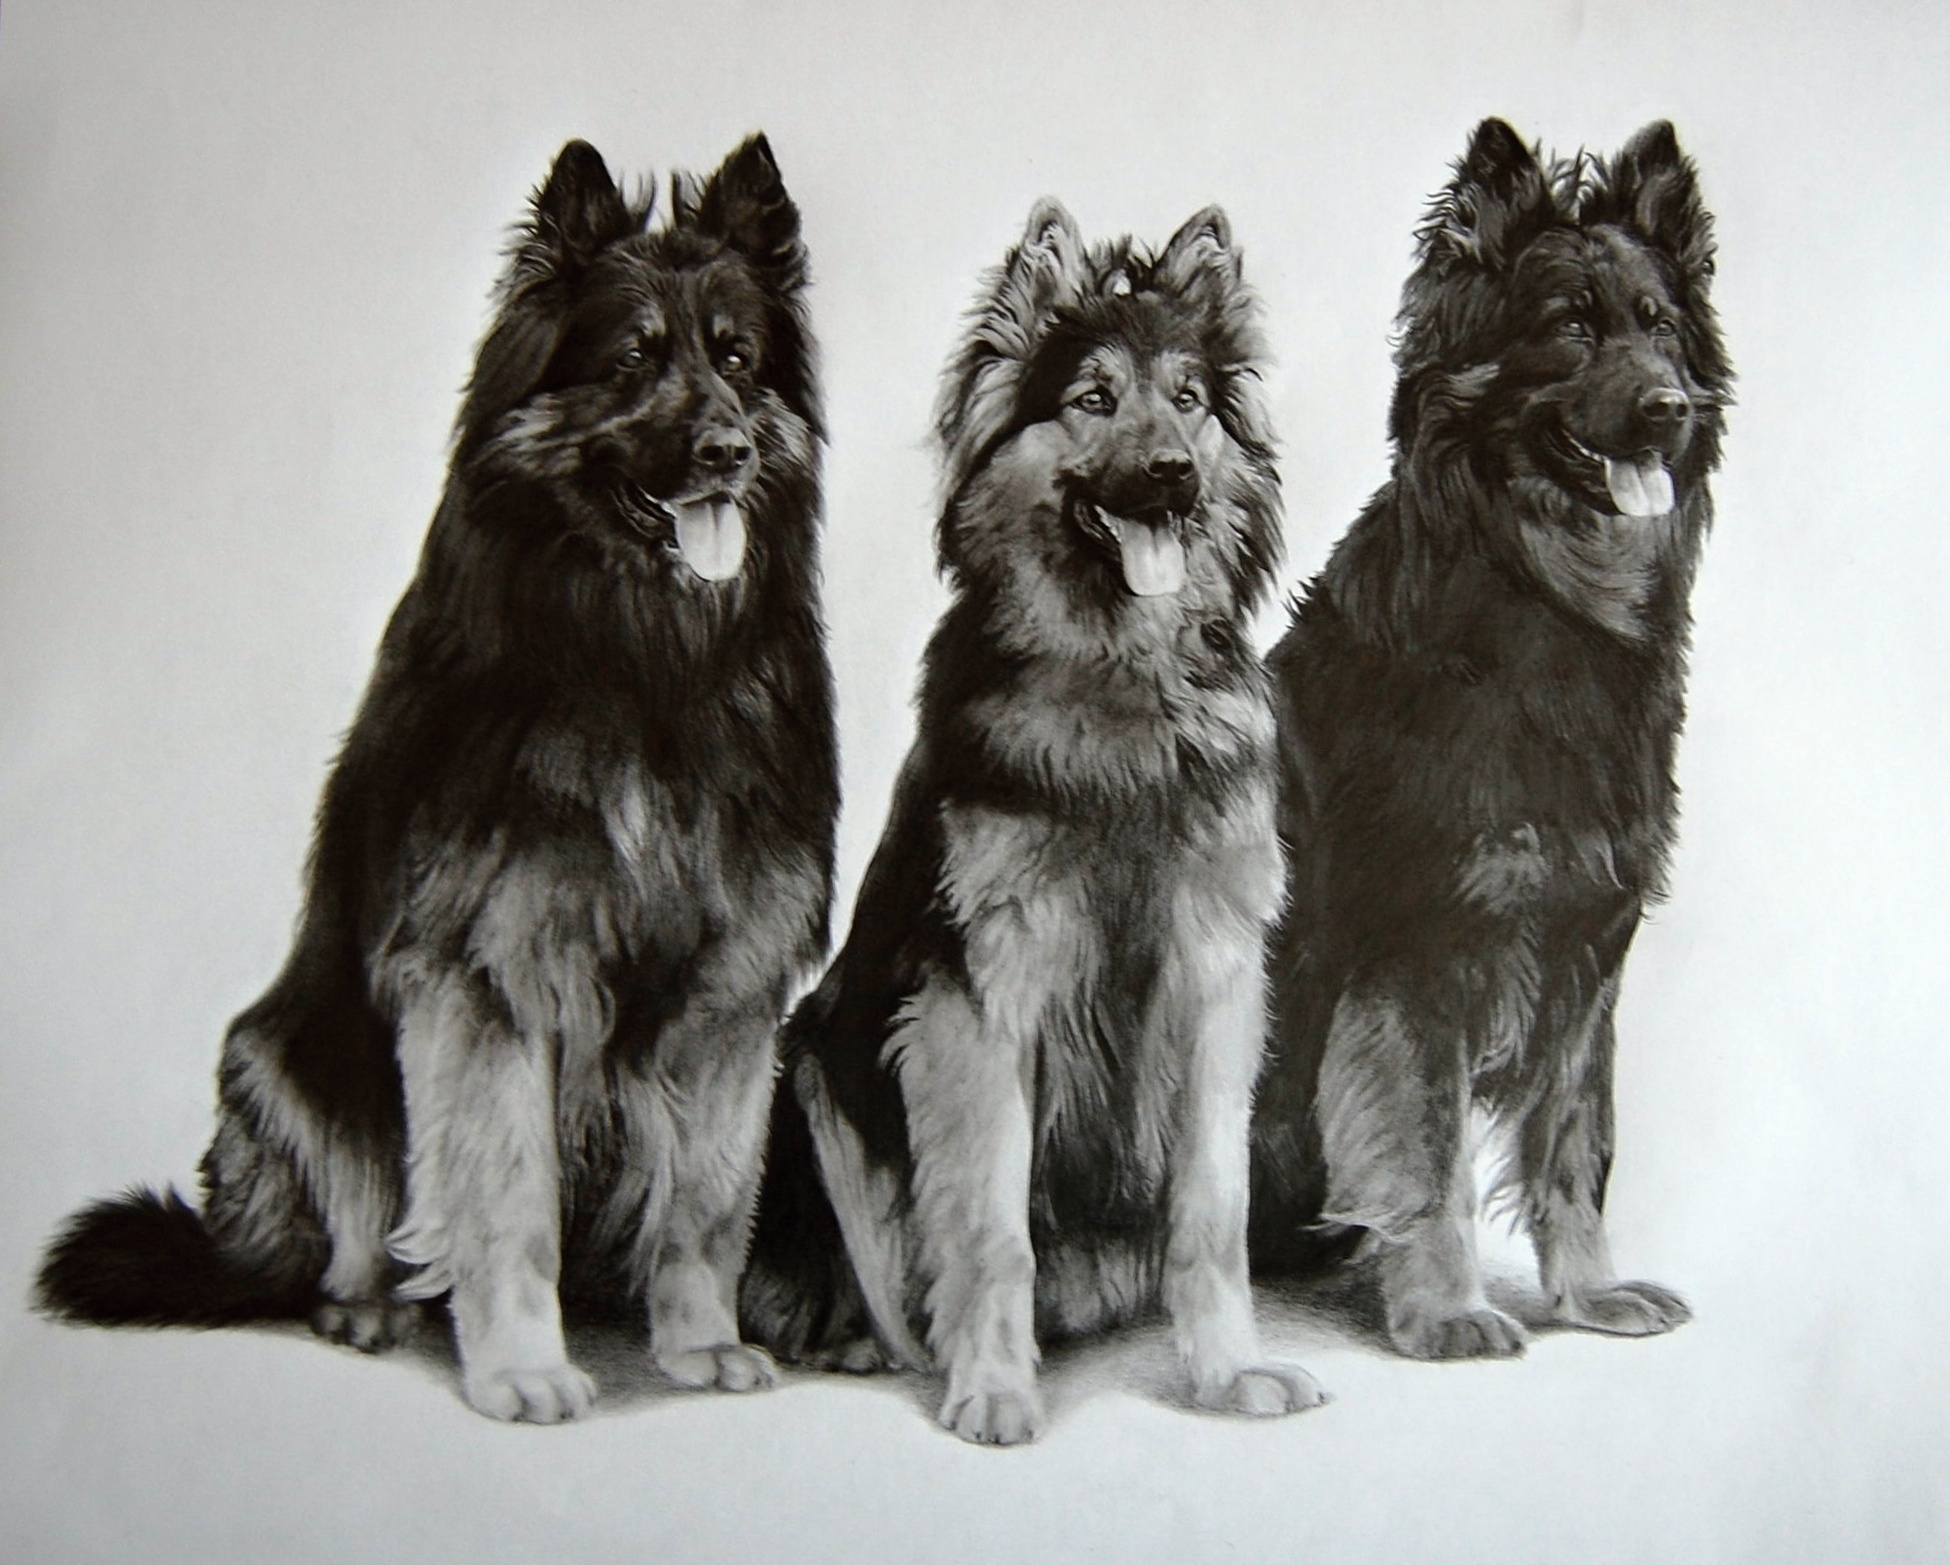 Chodské trio, 50x60 cm, 2010